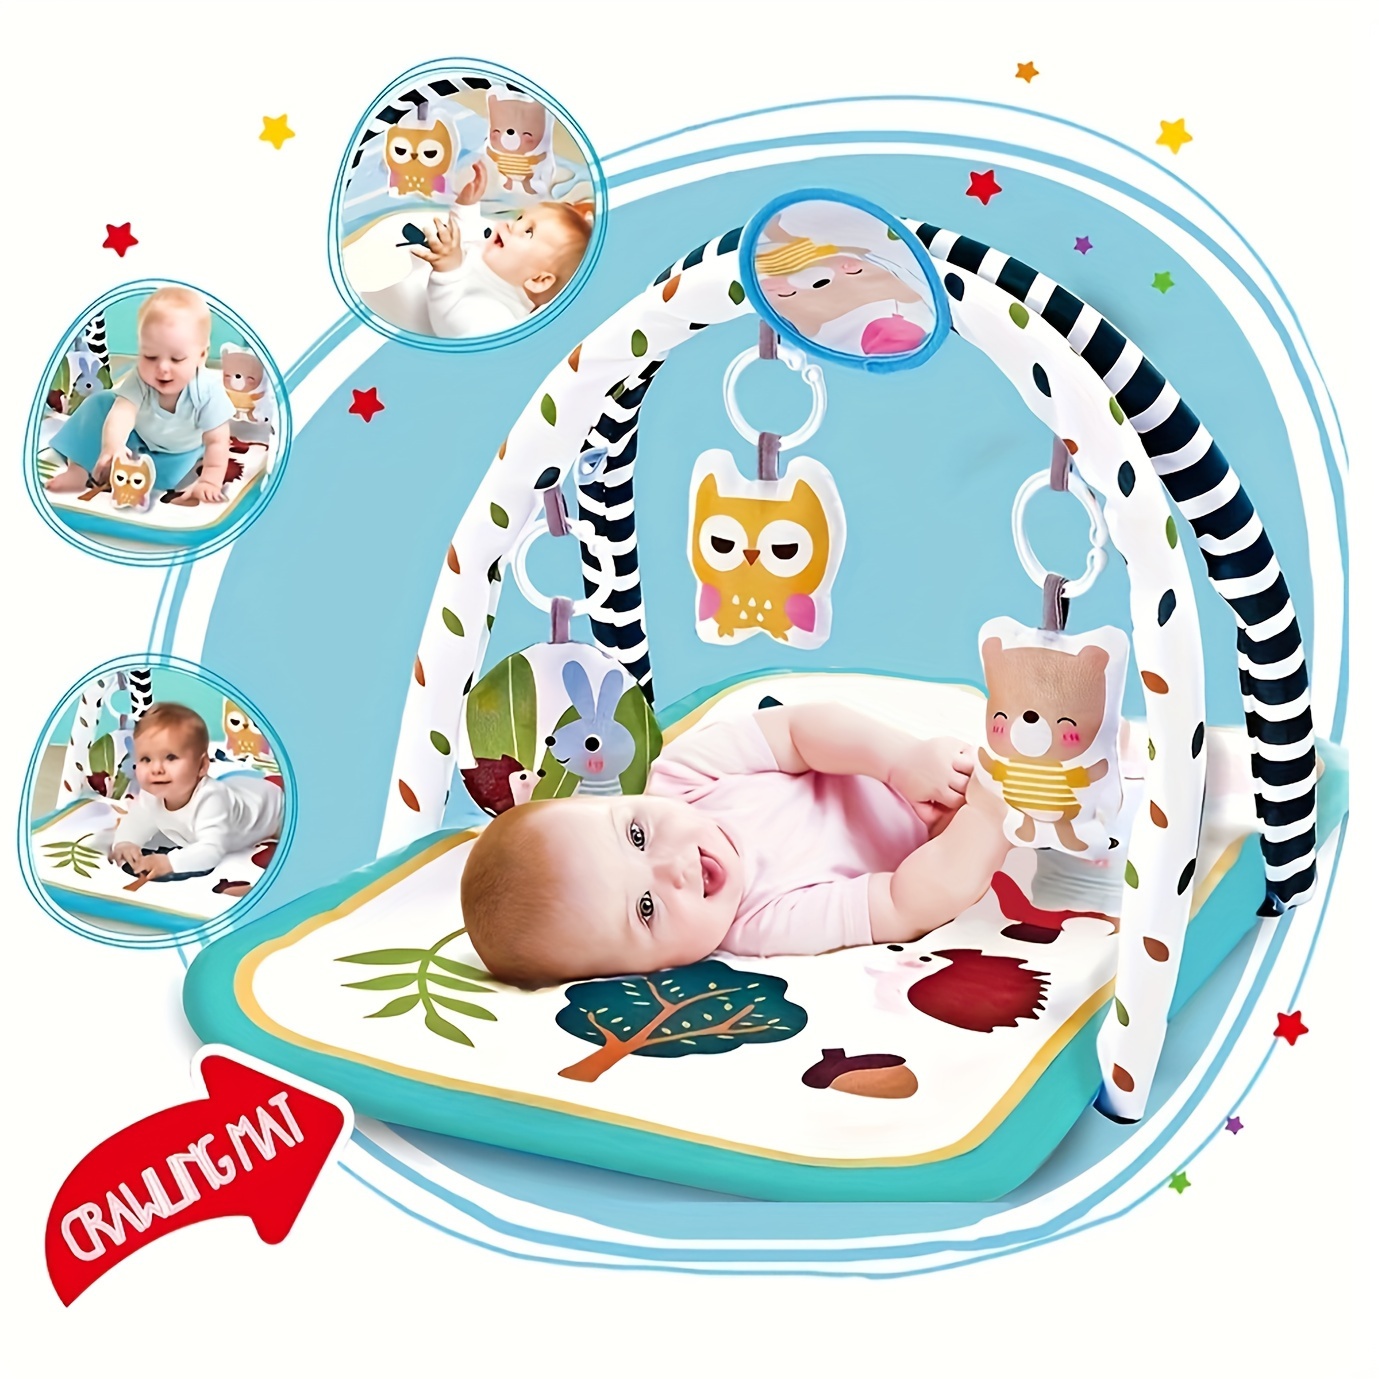 Colchoneta de juego para bebés, alfombra de gateo, grande, superficie  mullida, plegable y antideslizante. Levamdar CPB-US-ZMR69-2